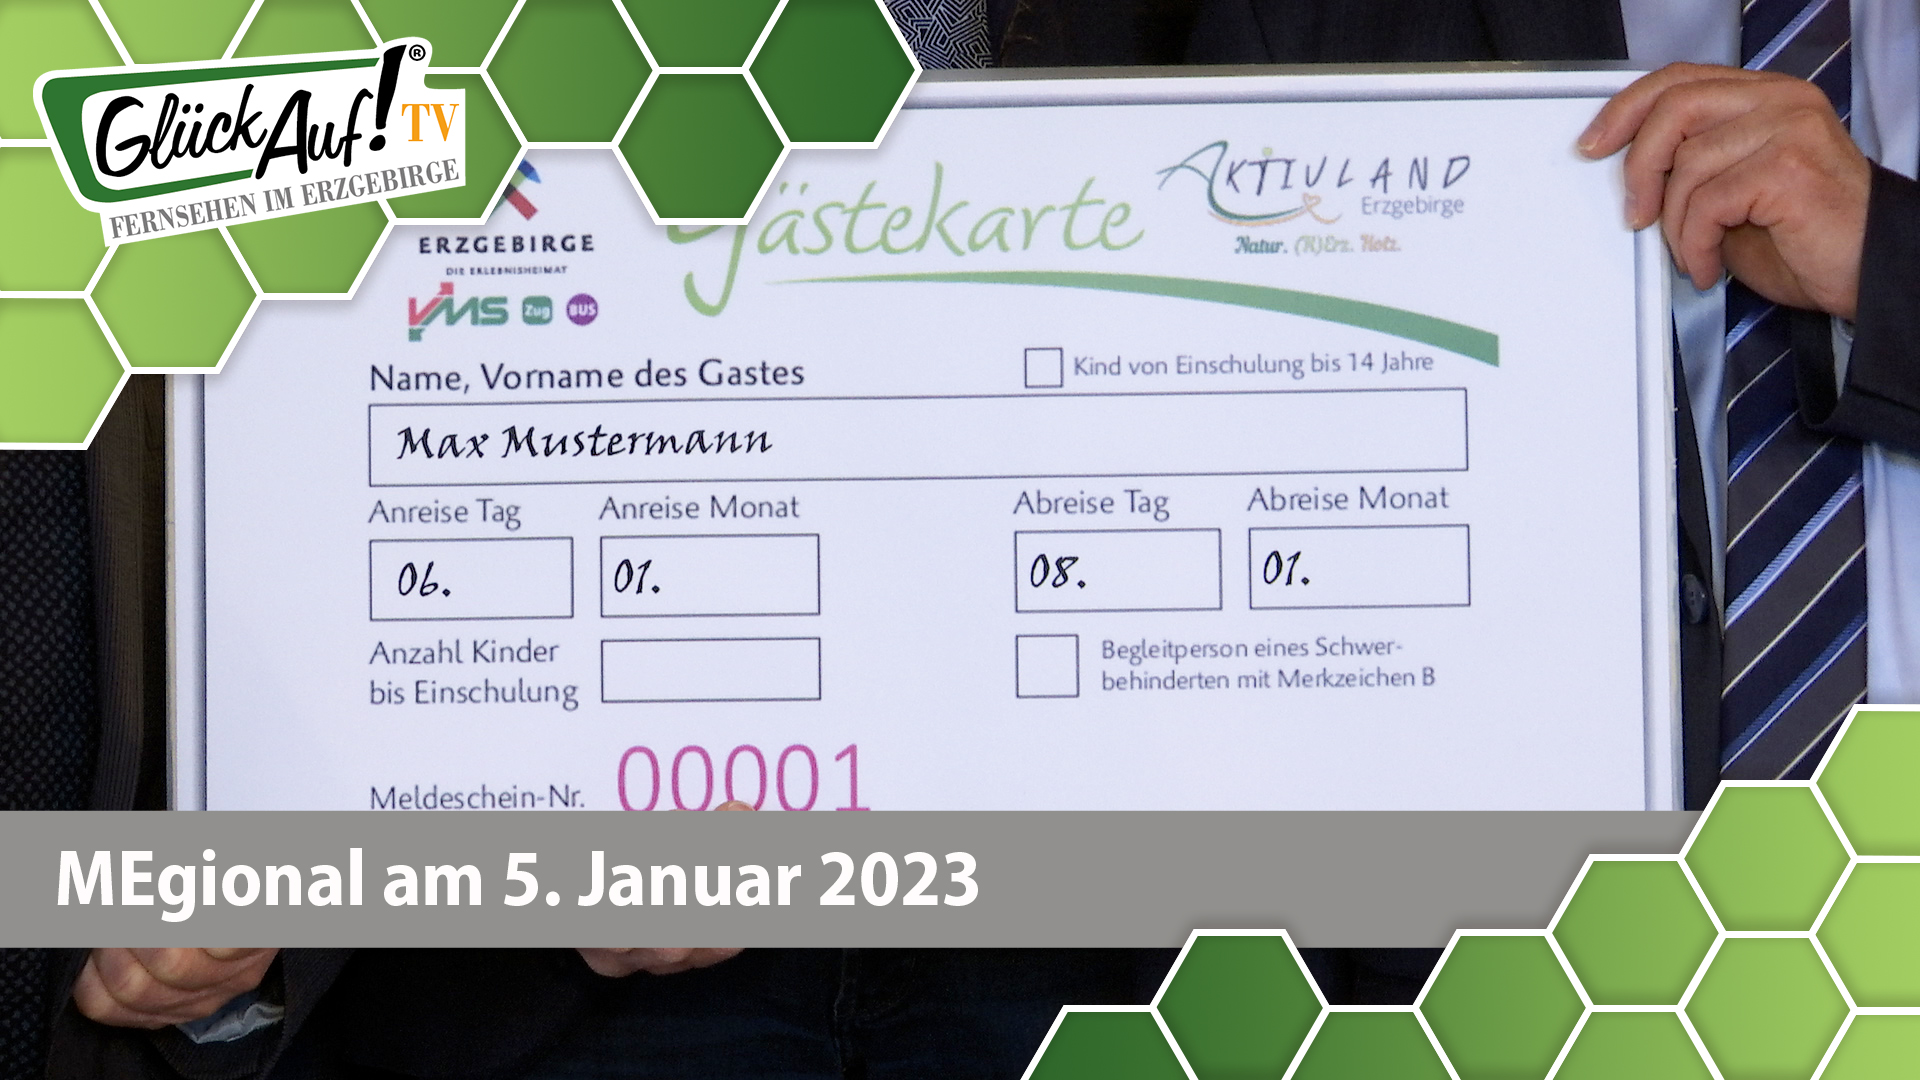 MEgional am 05. Januar 2023 - mit der neuen Gästekarte im Aktivland Erzgebirge